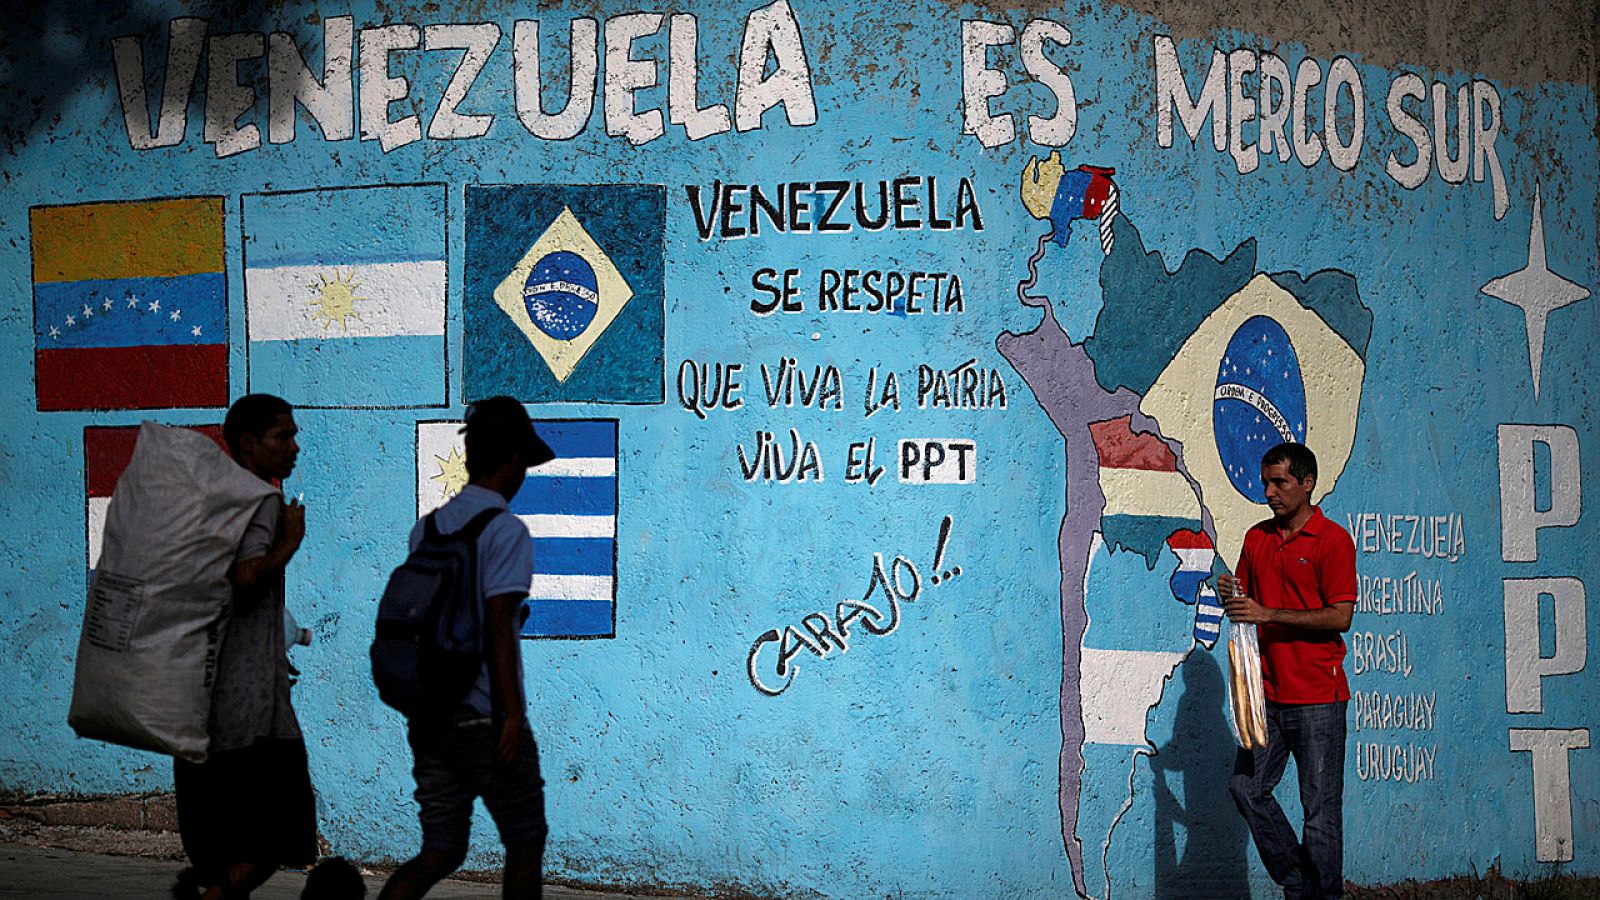 Ciudadanos venezolanos caminan en Caraas al lado de un mural que hace referencia a Mercosur.